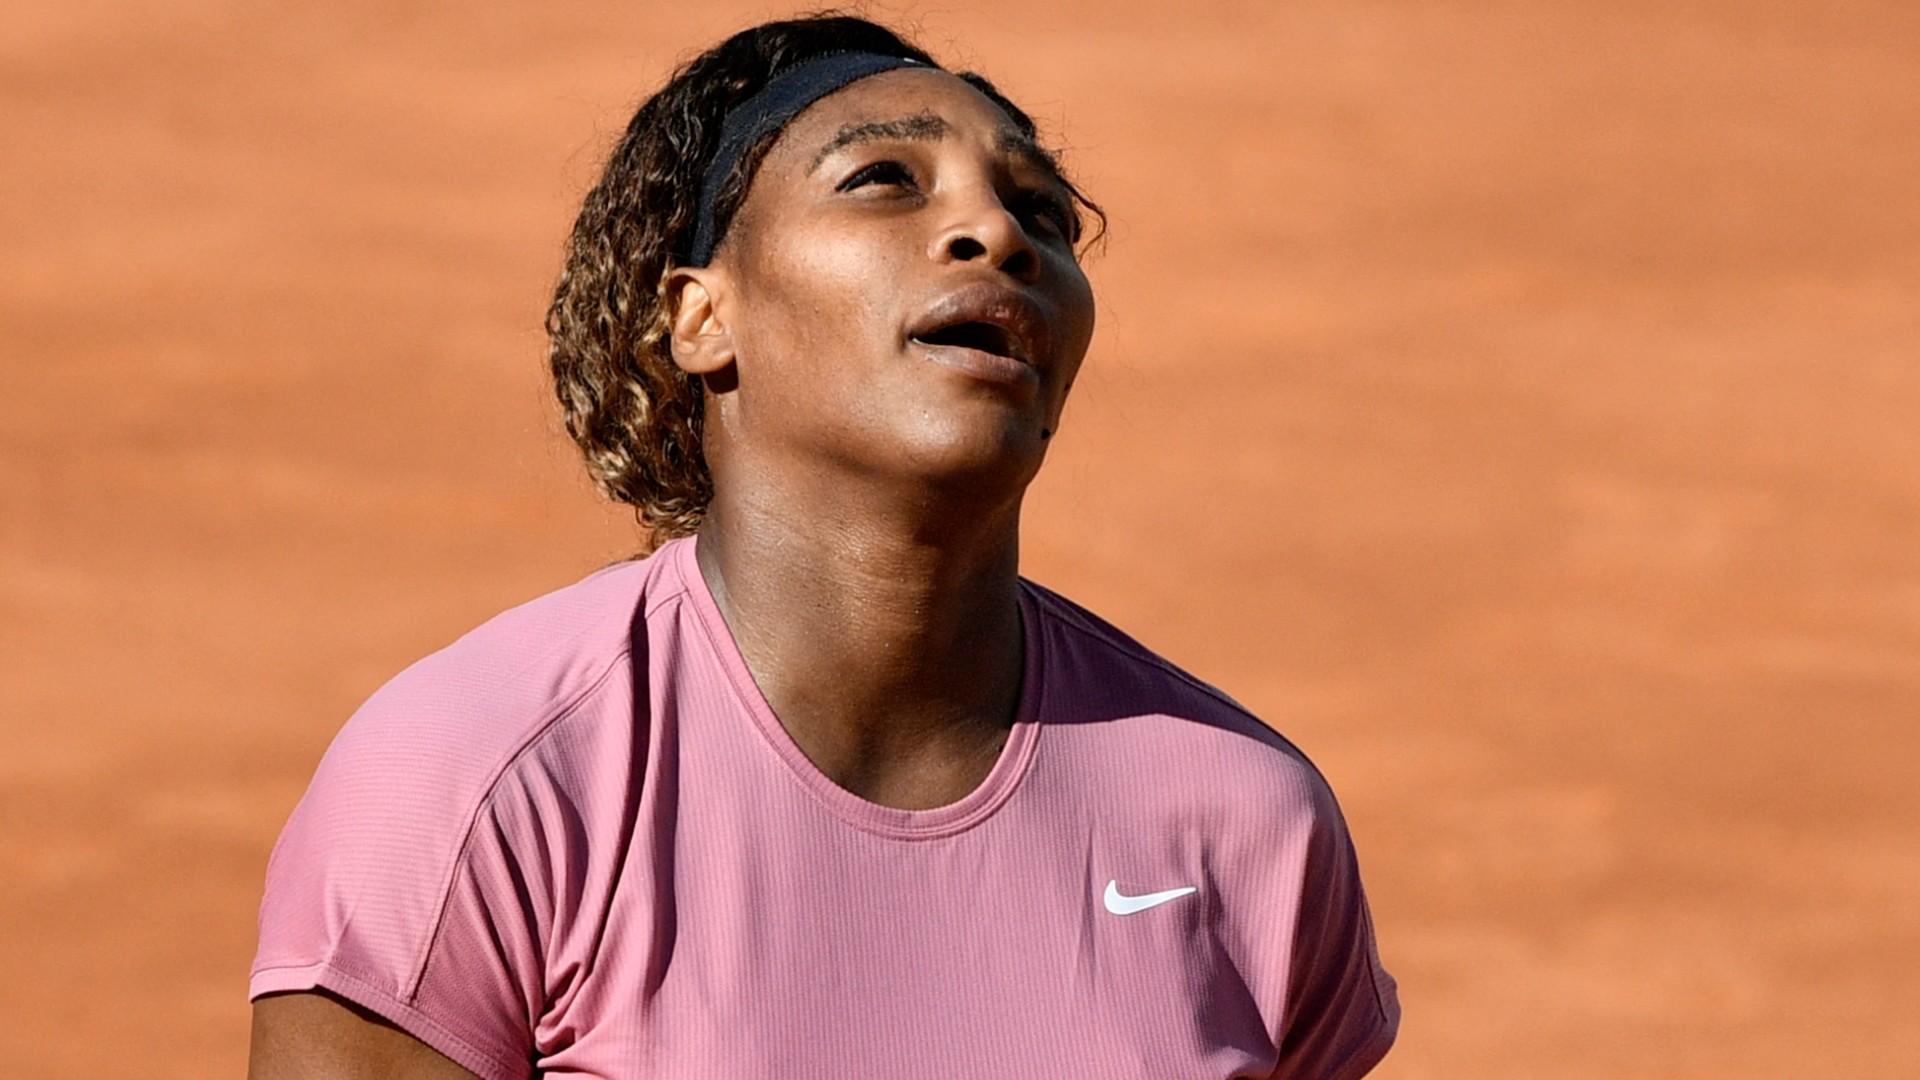 Serena Williams kihagyja az olimpiát, de még nem árulja el, miért